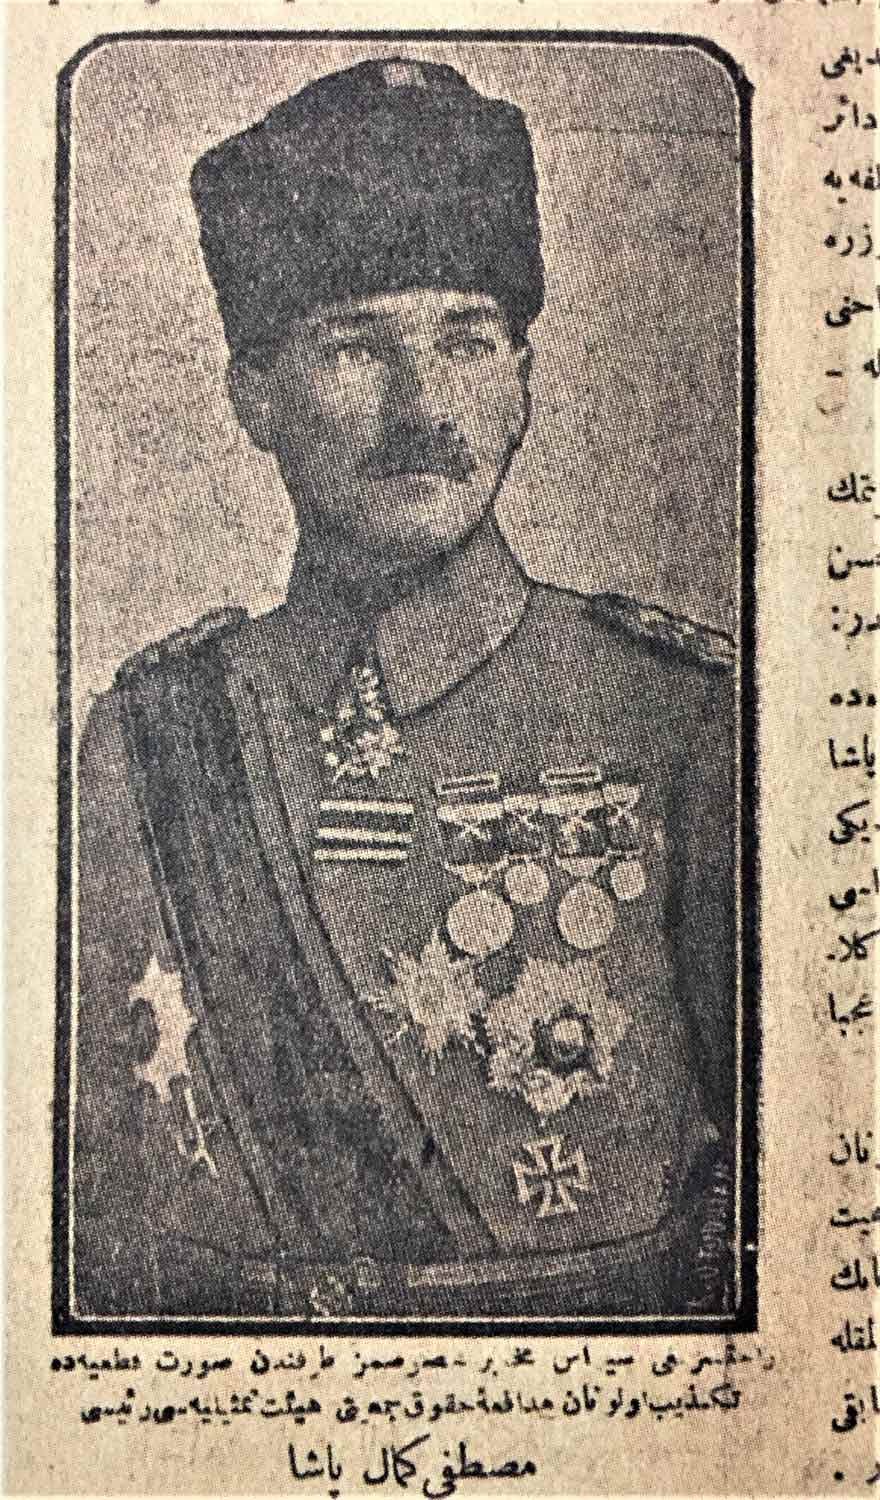 Yeni Gün 6 Aralık 1919. Temsil Heyeti Reisi Mustafa Kemal Paşa. 